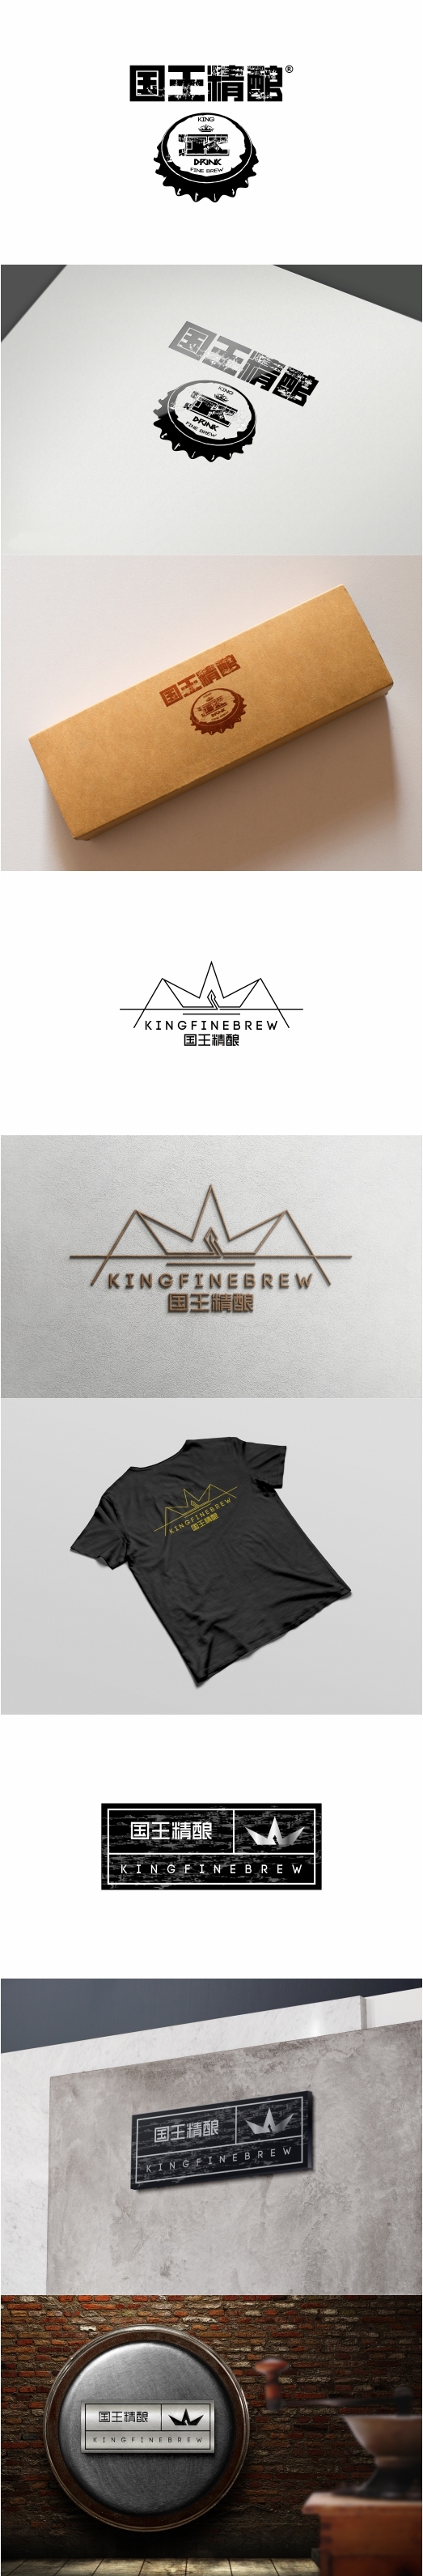 国王精酿品牌设计图0